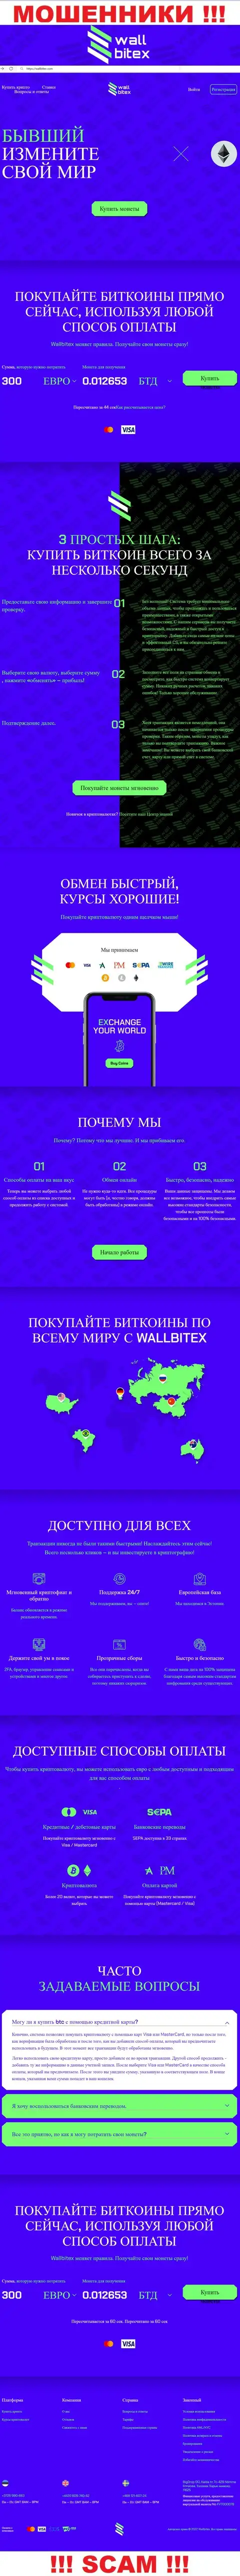 WallBitex Com - это официальный сайт преступно действующей организации Wall Bitex